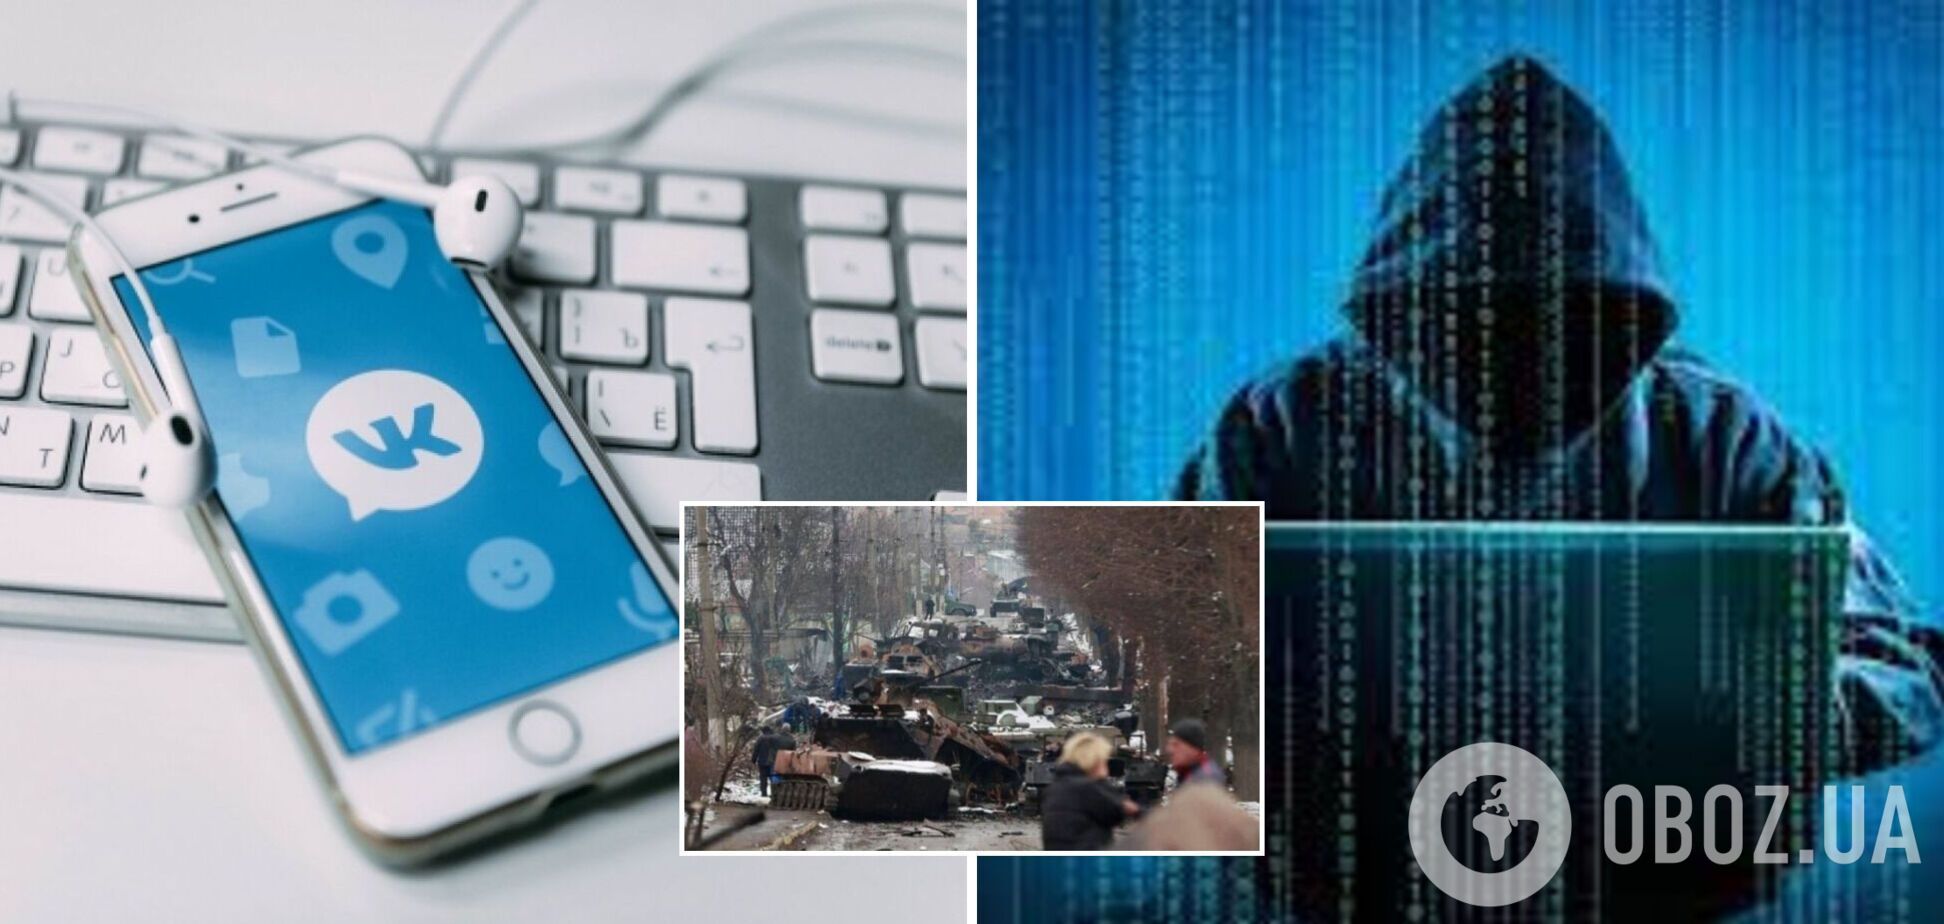 'ВКонтакте' сломали хакеры